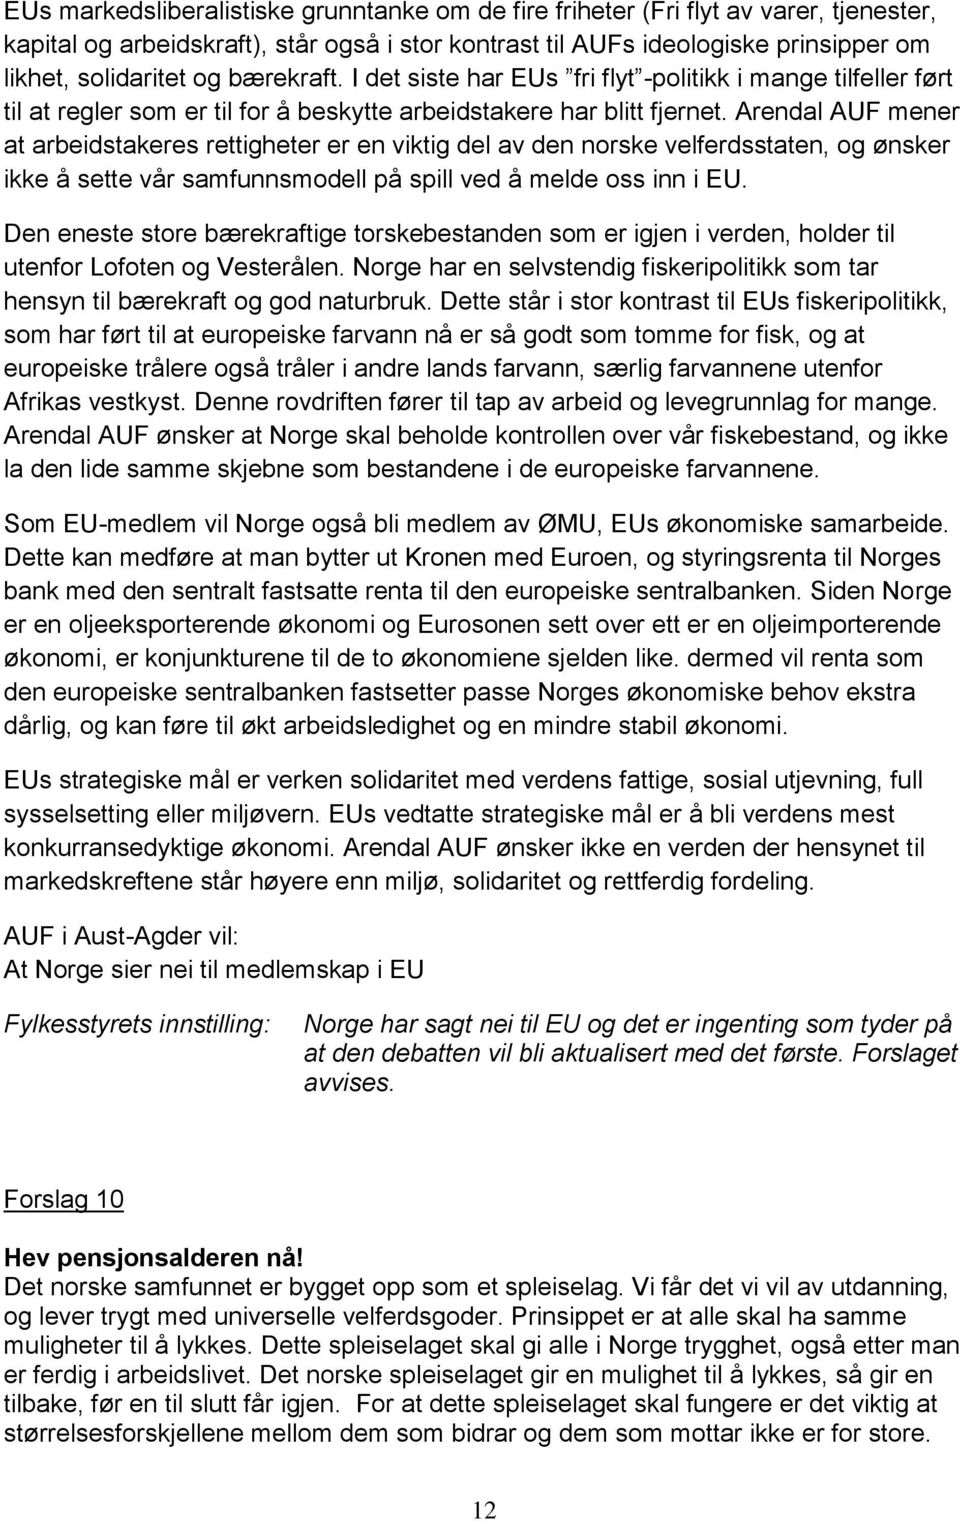 Arendal AUF mener at arbeidstakeres rettigheter er en viktig del av den norske velferdsstaten, og ønsker ikke å sette vår samfunnsmodell på spill ved å melde oss inn i EU.